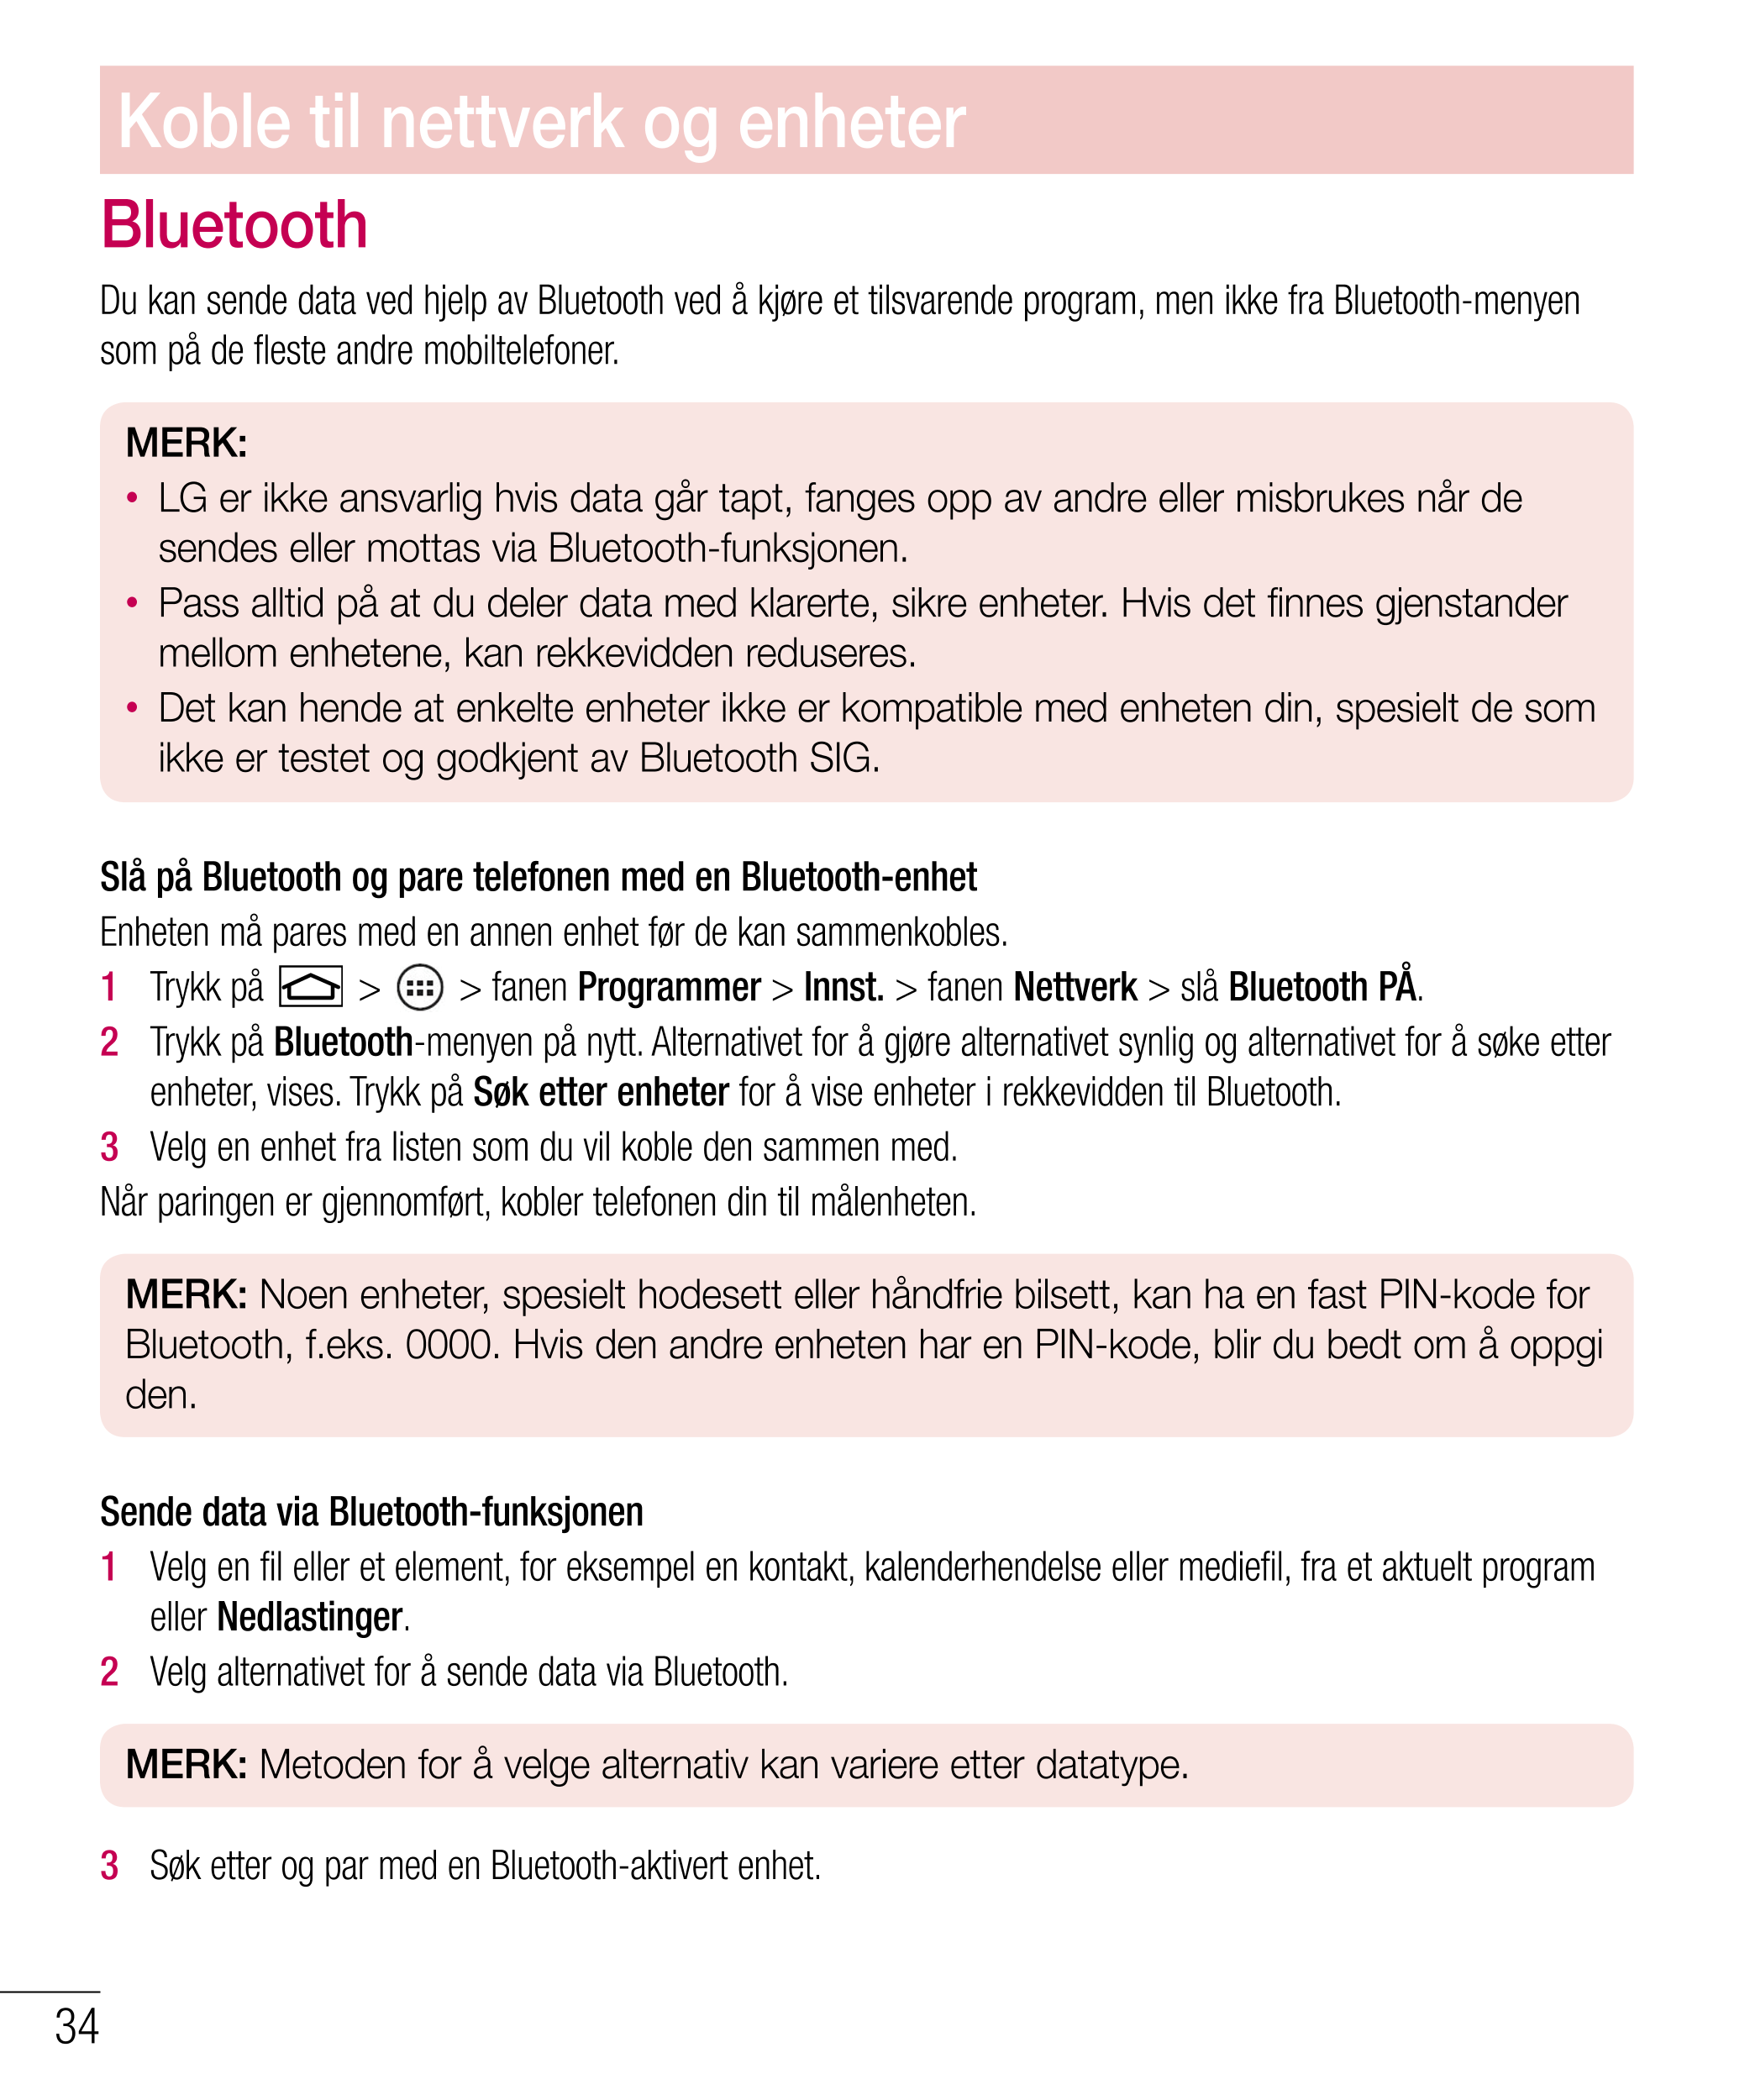 Koble til nettverk og enheter
Bluetooth
Du kan sende data ved hjelp av Bluetooth ved å kjøre et tilsvarende program, men ikke fr